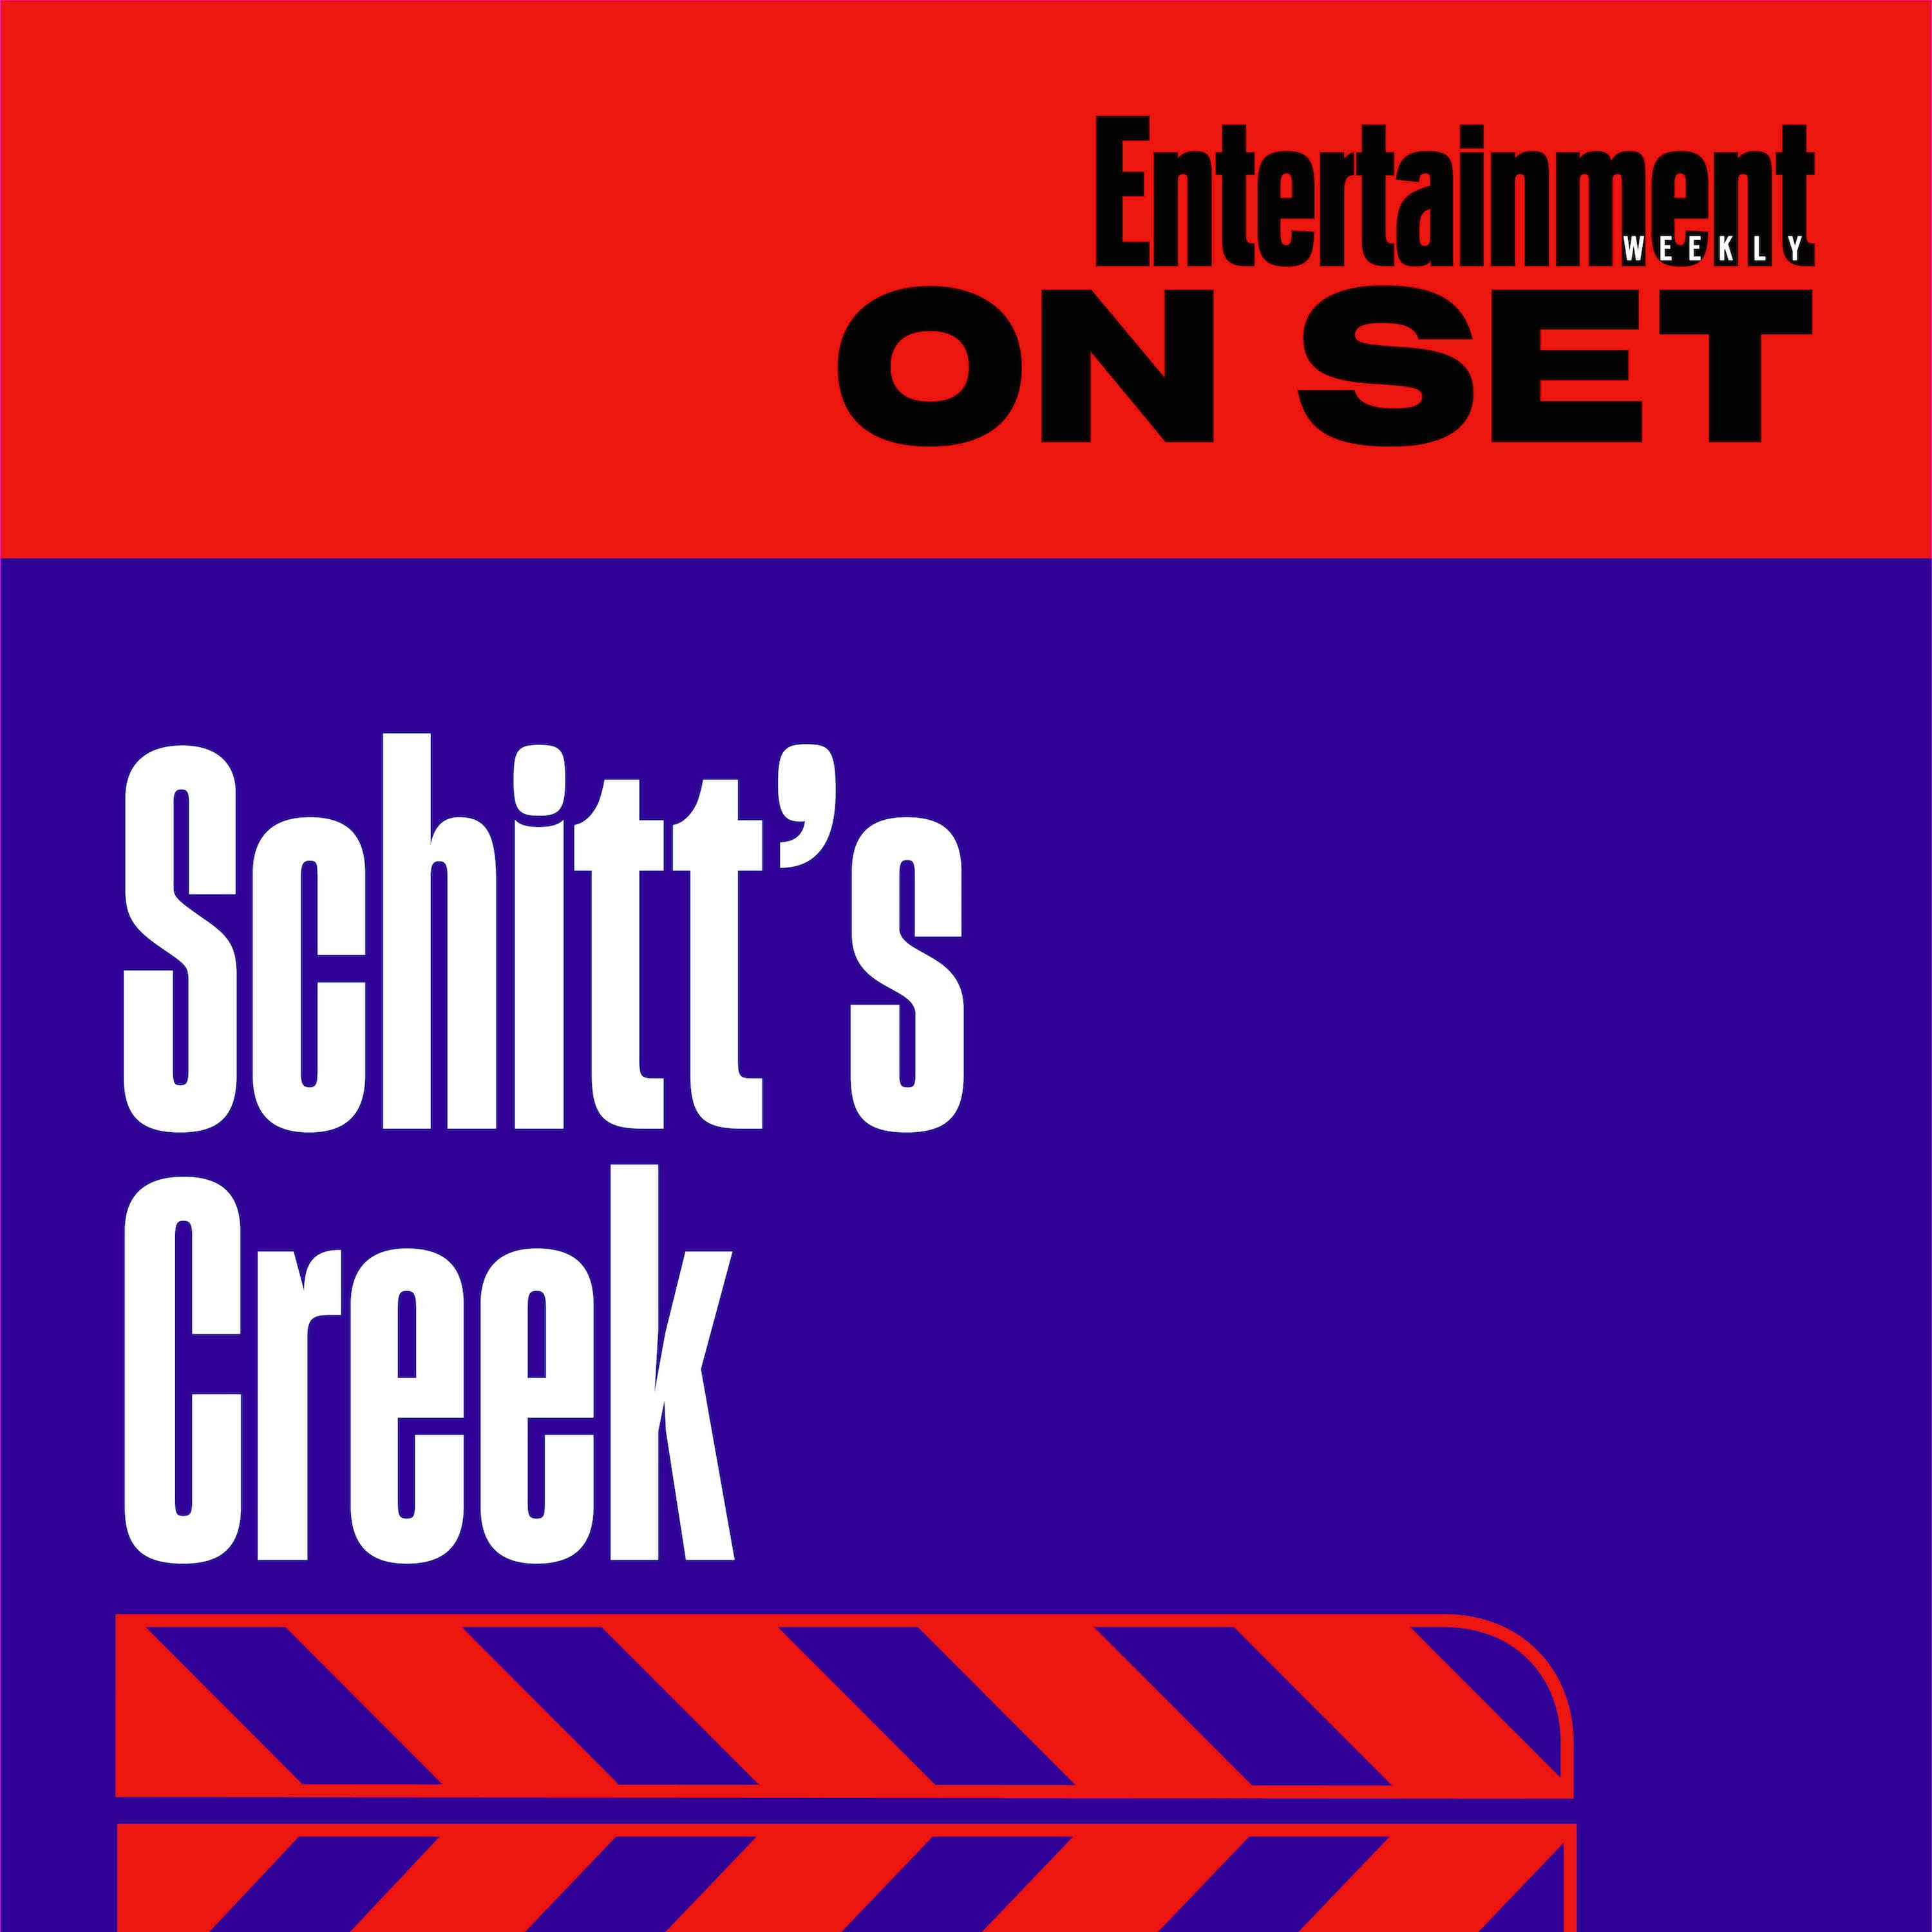 EW On Set: Schitt's Creek Episode 6.05 "The Premiere"